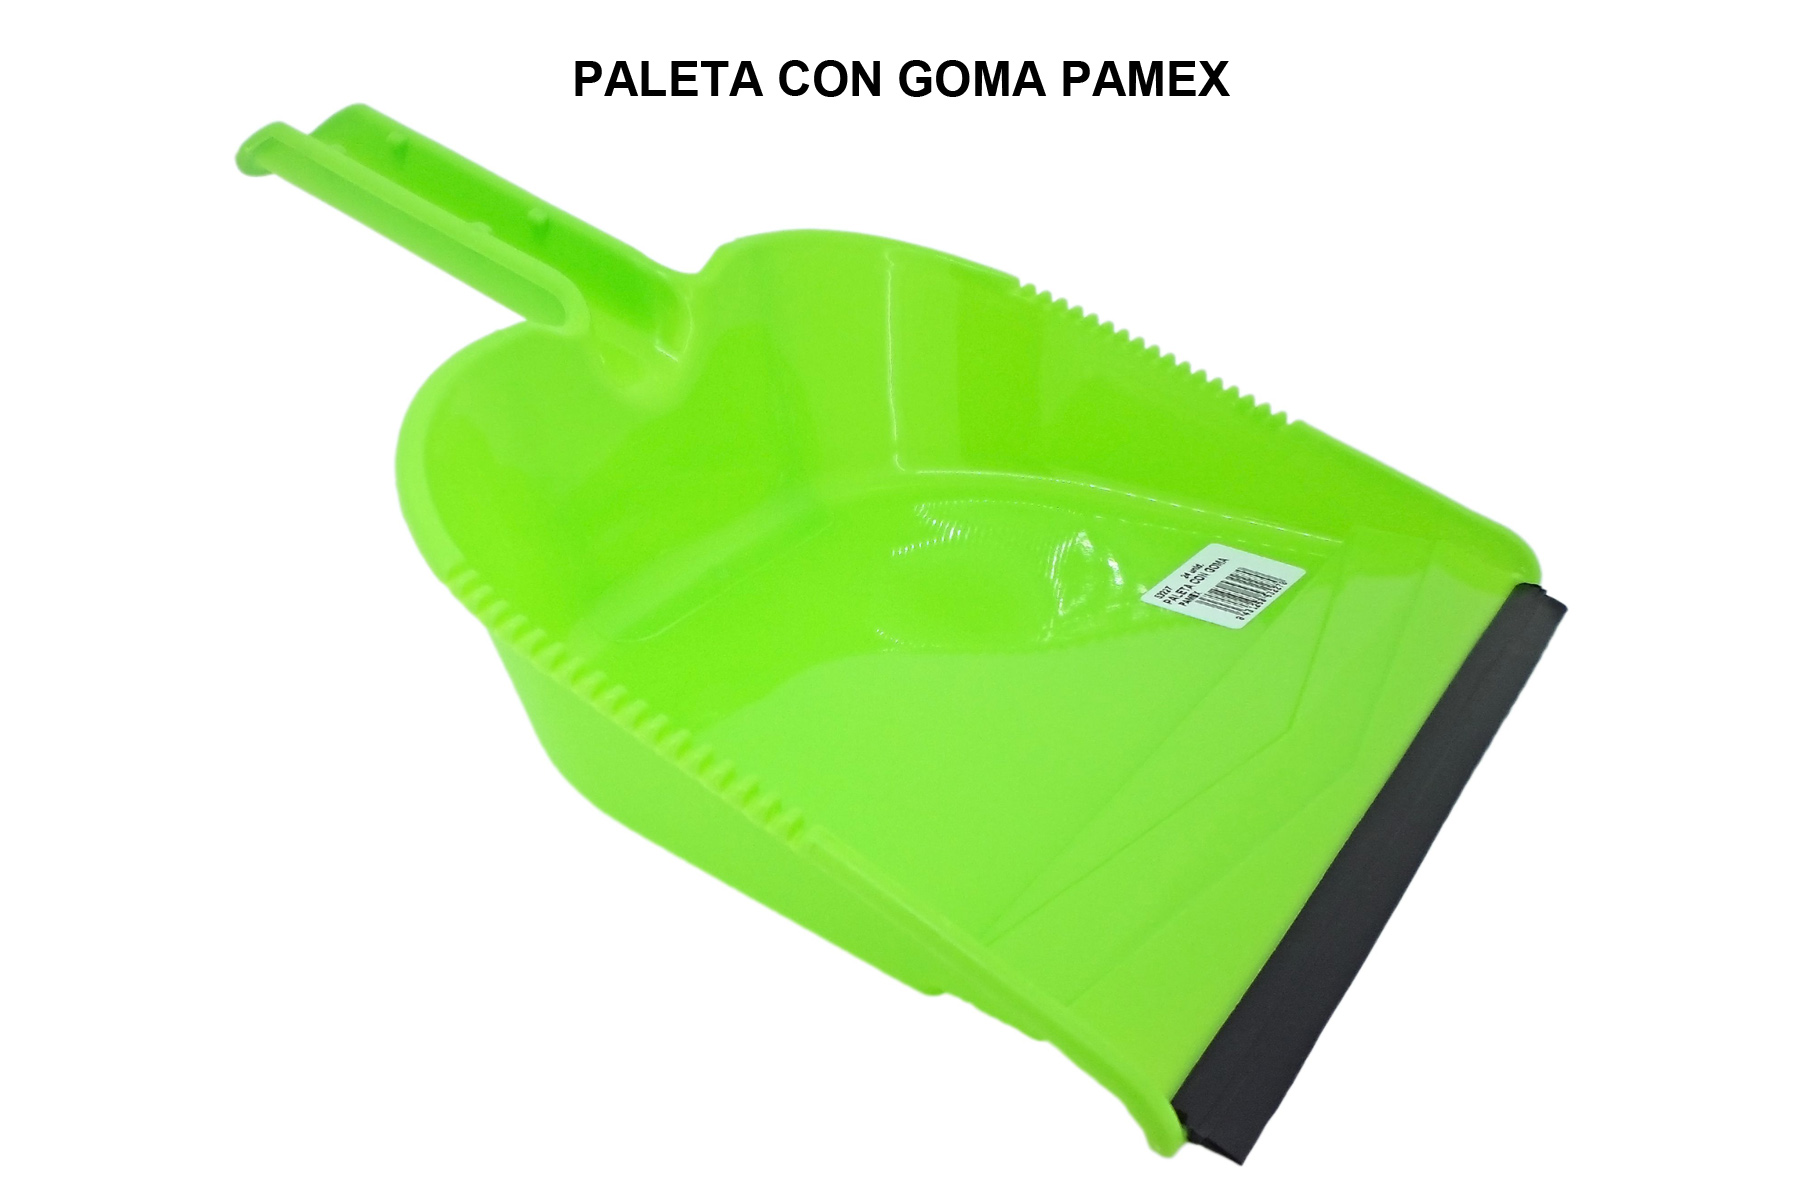 PALETA CON GOMA PAMEX